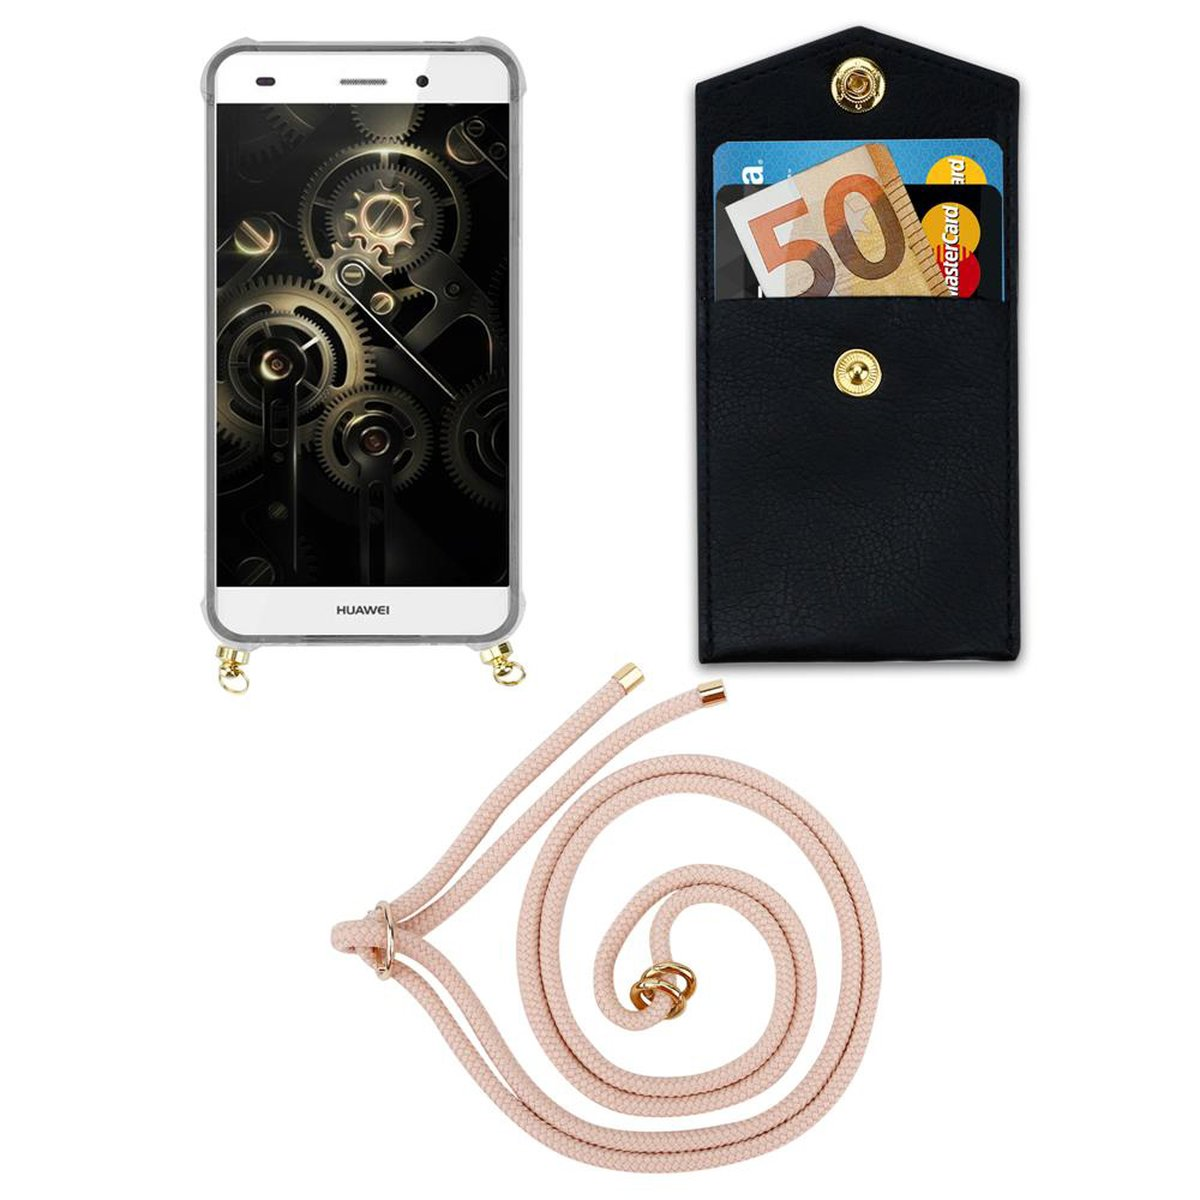 CADORABO Handy Kette mit Gold Backcover, Huawei, LITE 2015, Kordel Band Ringen, und Hülle, P8 abnehmbarer PERLIG ROSÉGOLD